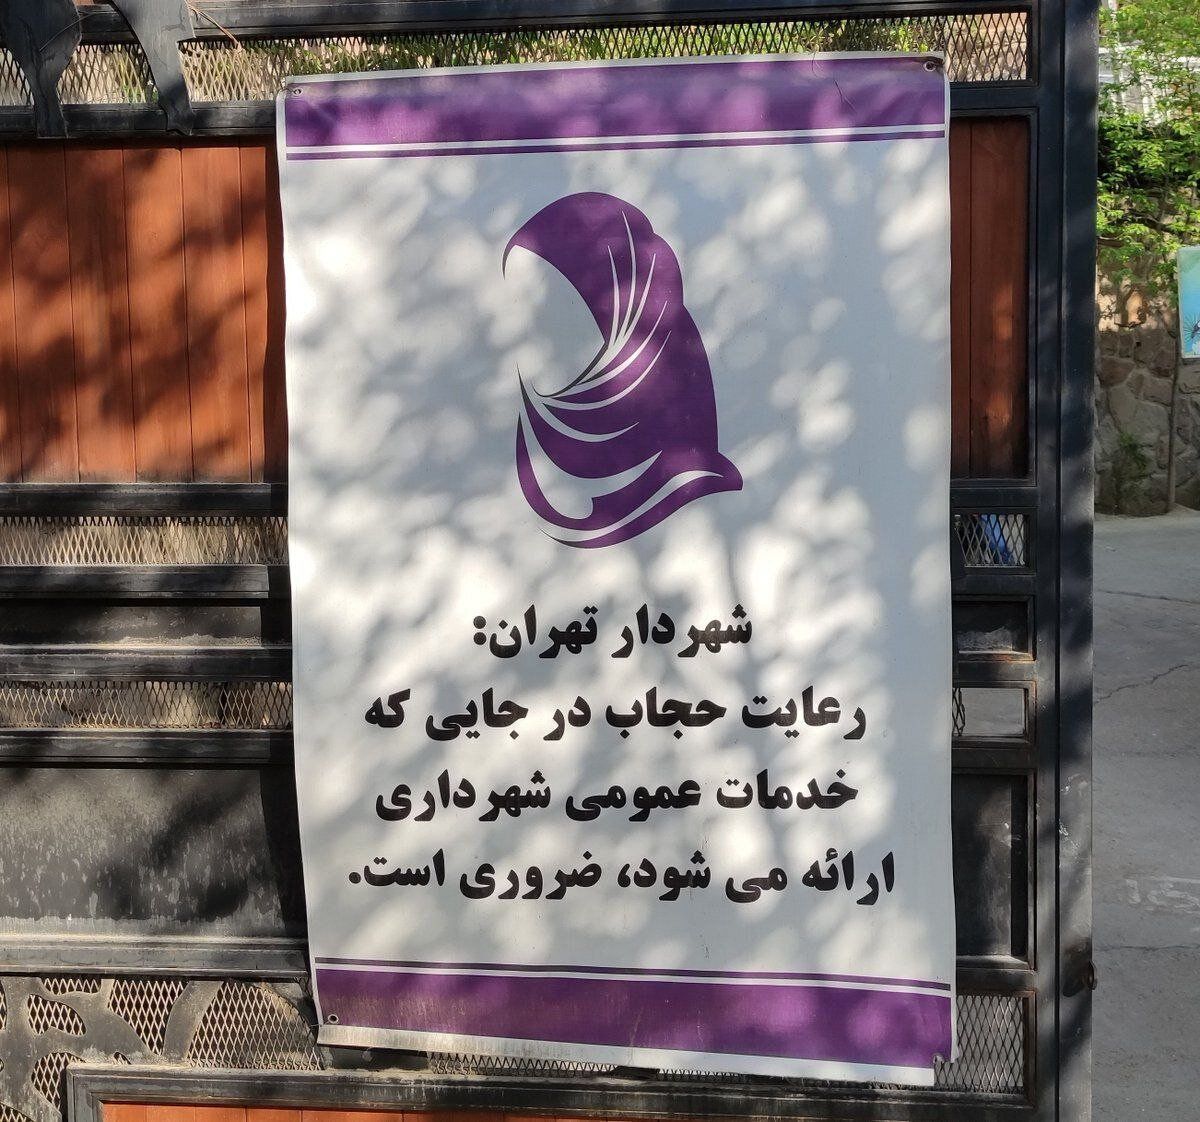 عکس | شاهکار جدید زاکانی؛ استفاده از جمله شخصی درباره حجاب در بنر شهرداری تهران!